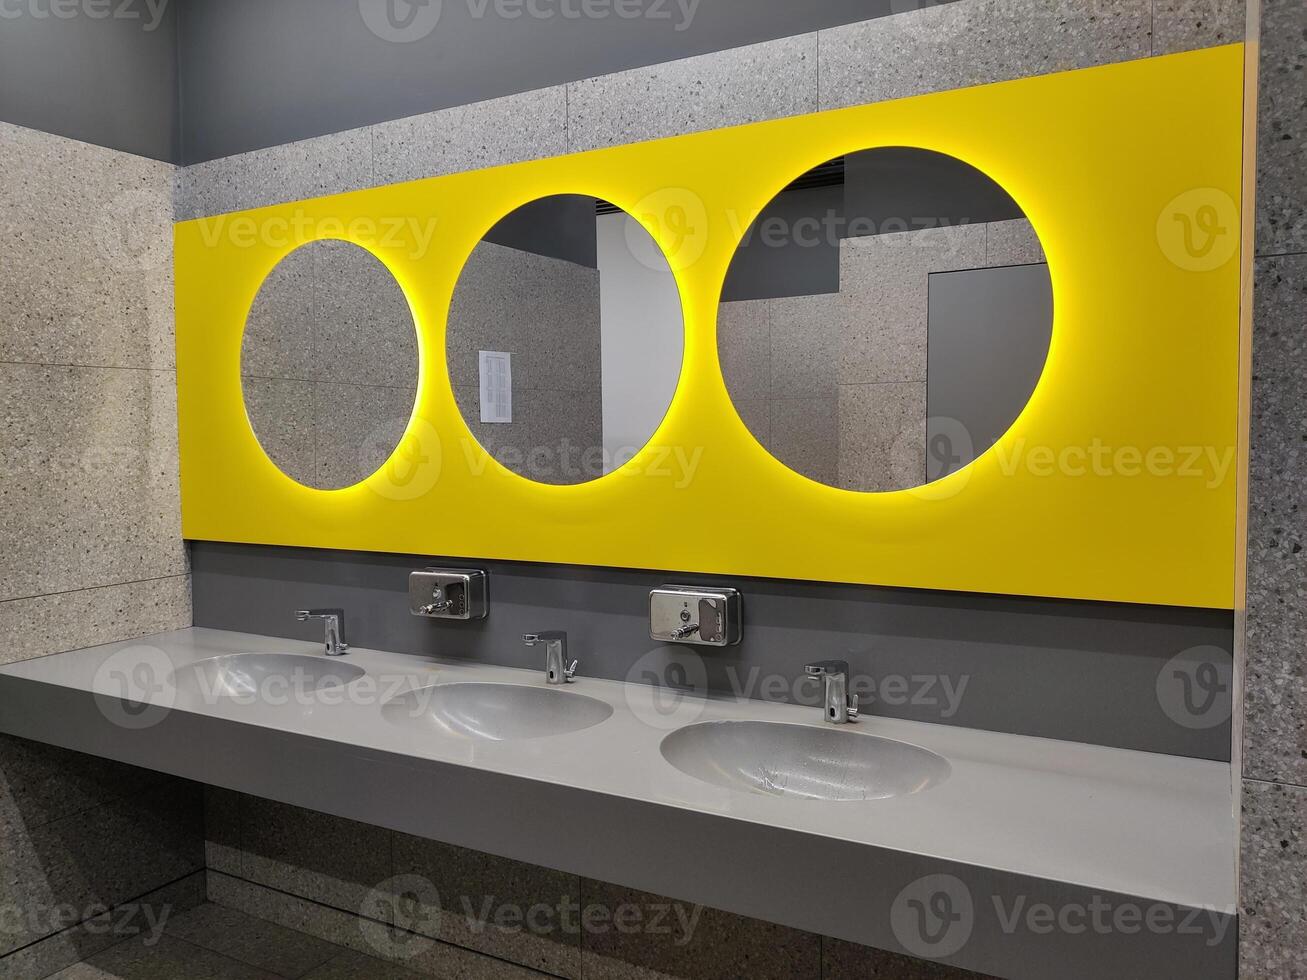 moderno baño interior con Roca gris losas, lavabo y y redondo amarillo espejos baño con lavabo y grifo. público baño en el aeropuerto o restaurante, cafetería, oficina foto